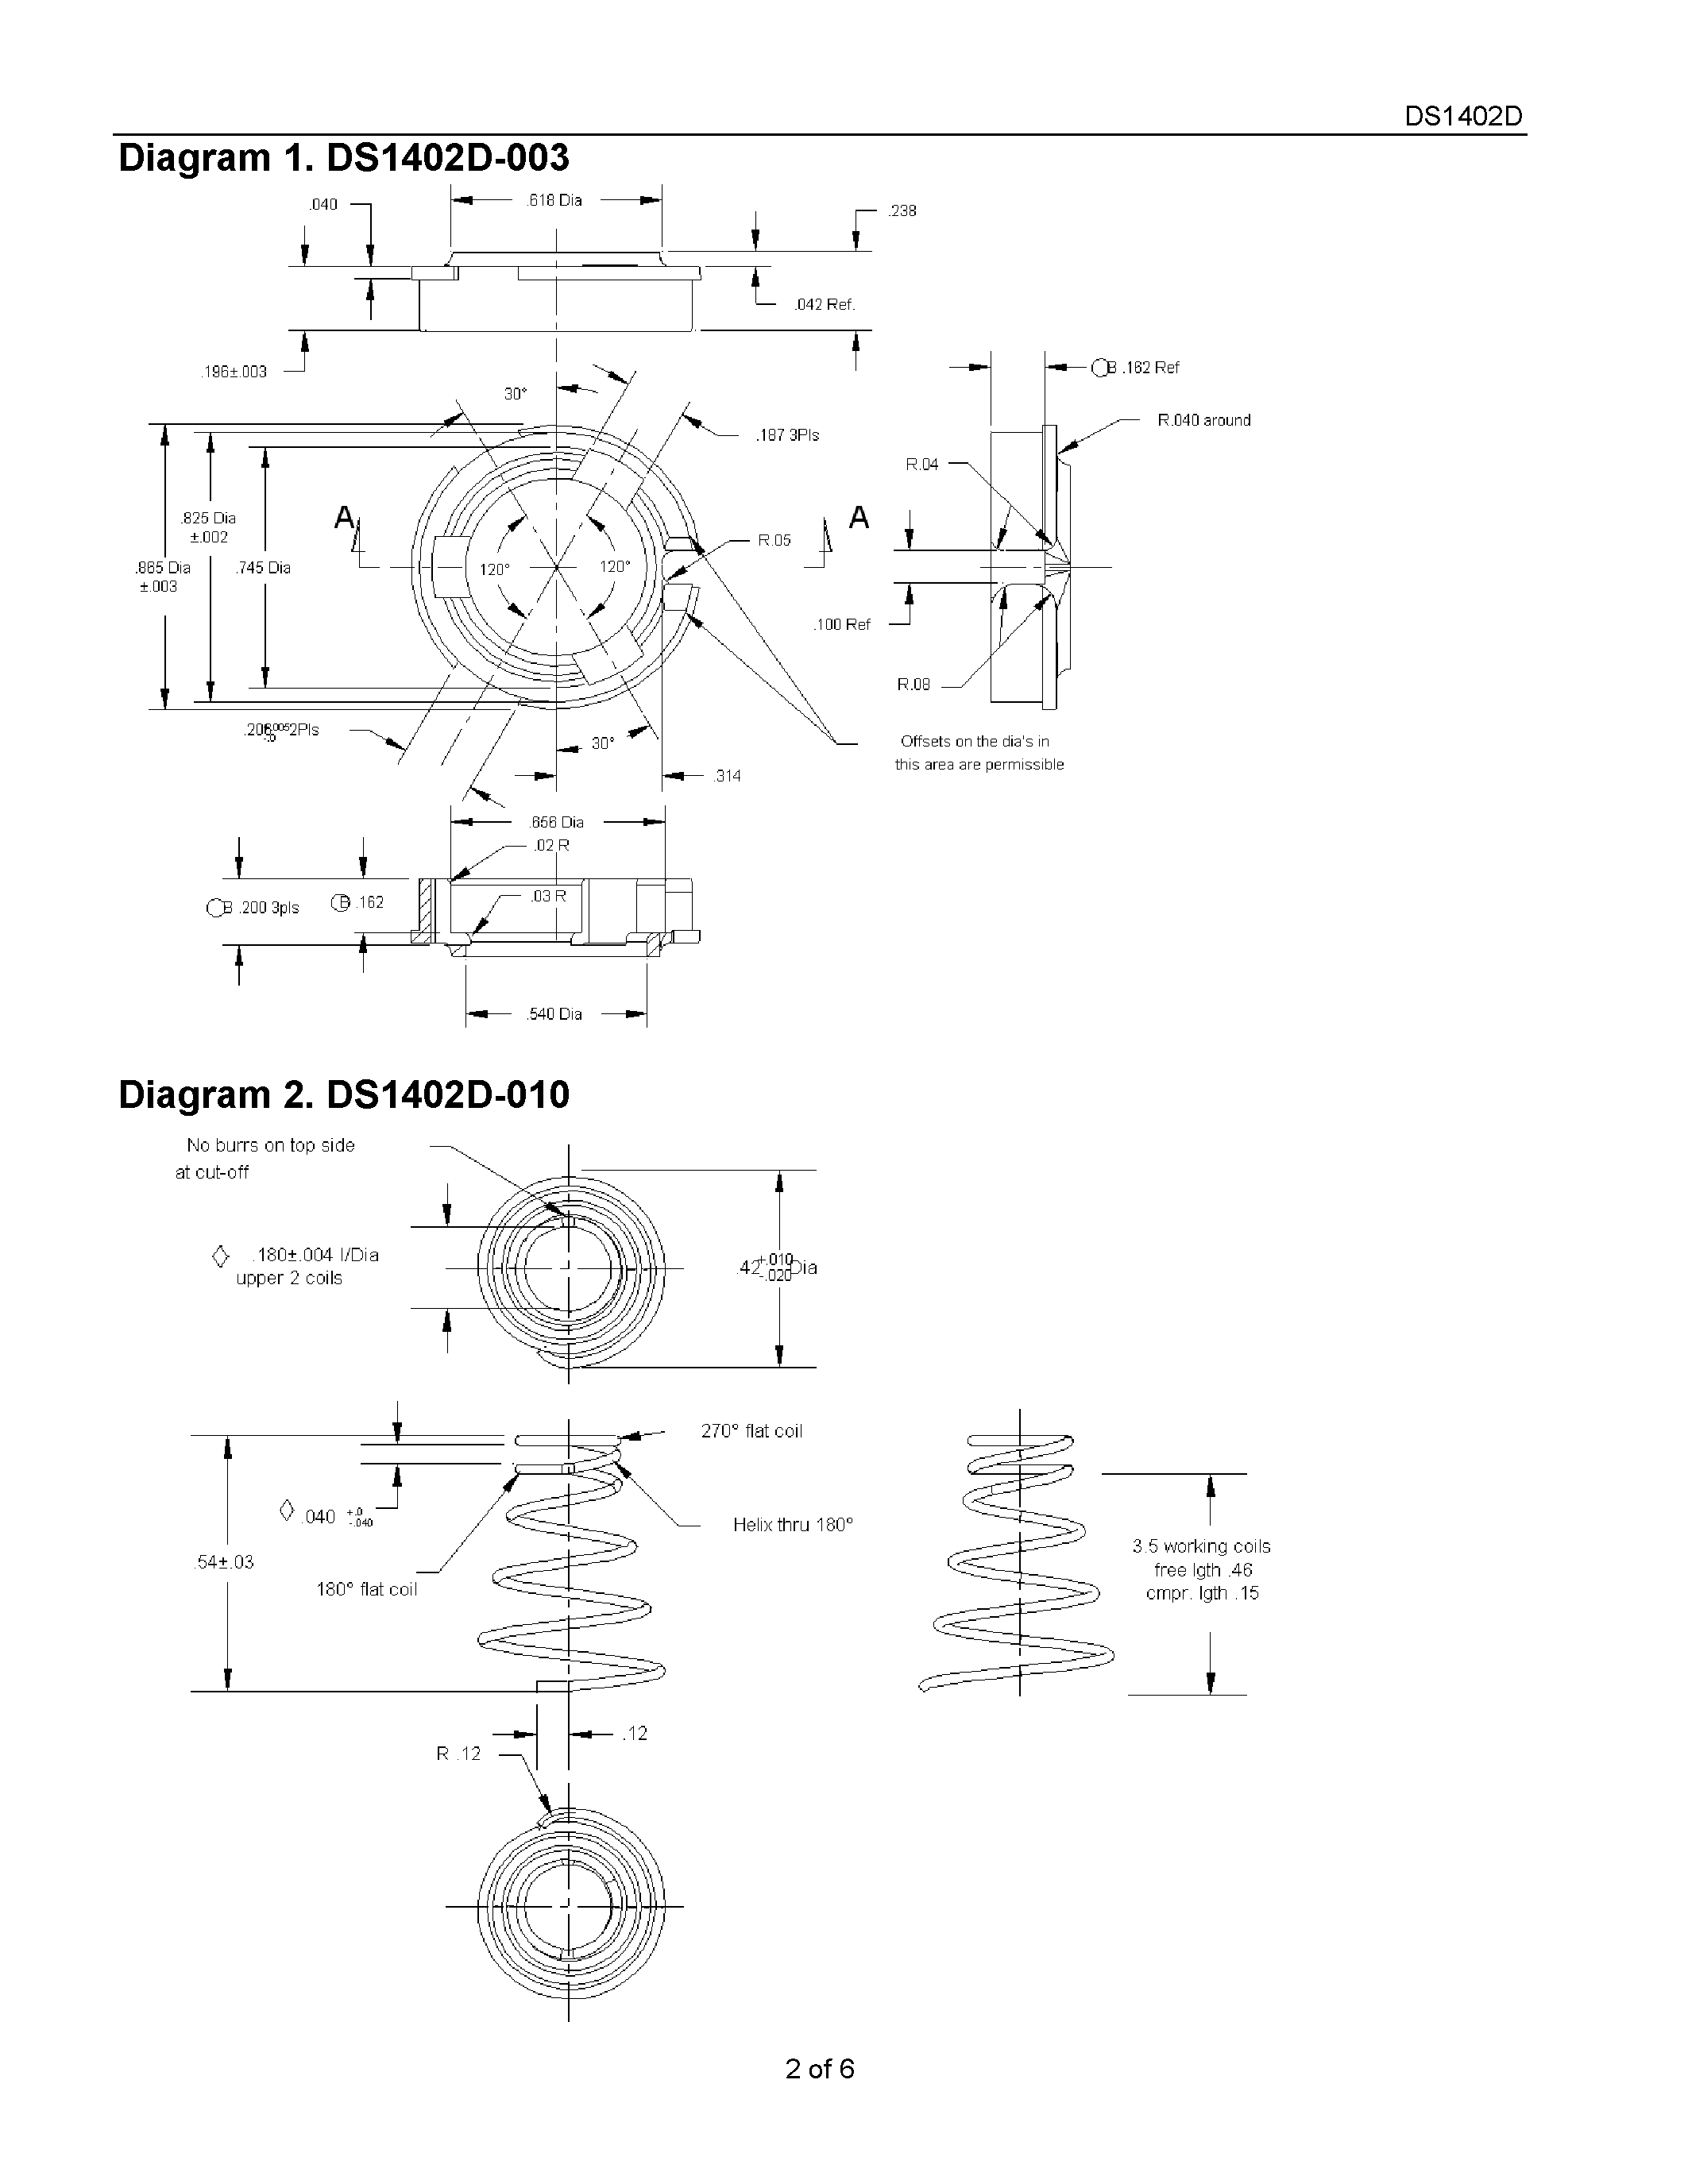 Даташит DS1402D-11 - iButton Probe Component Parts страница 2